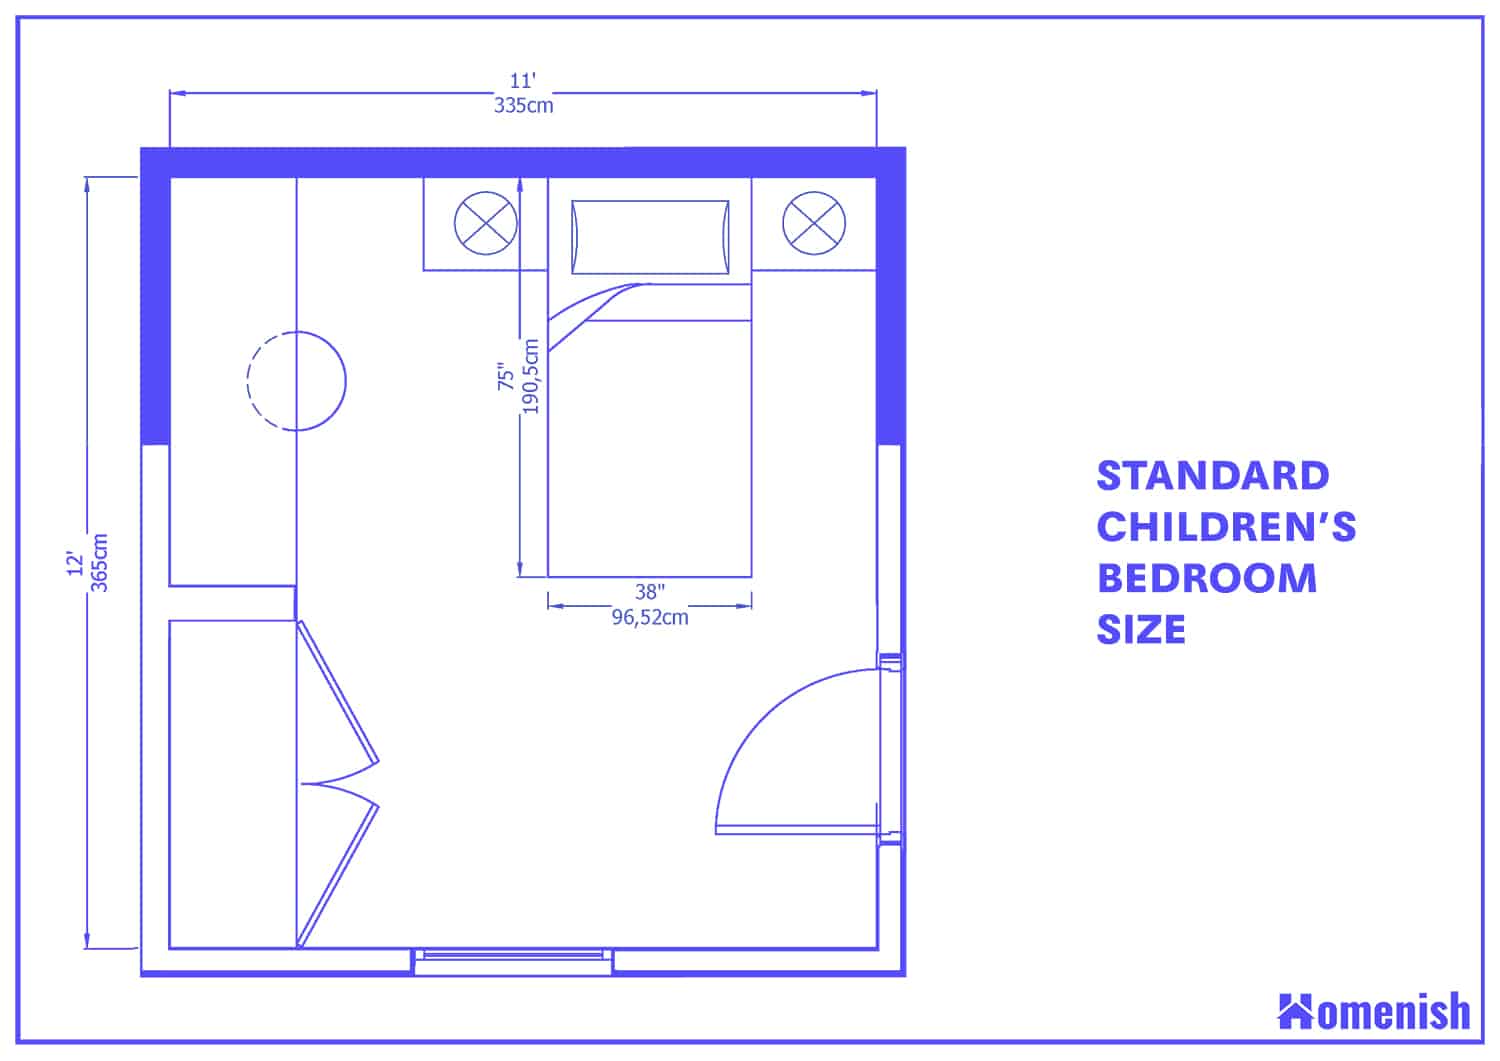 標準兒童臥室大小